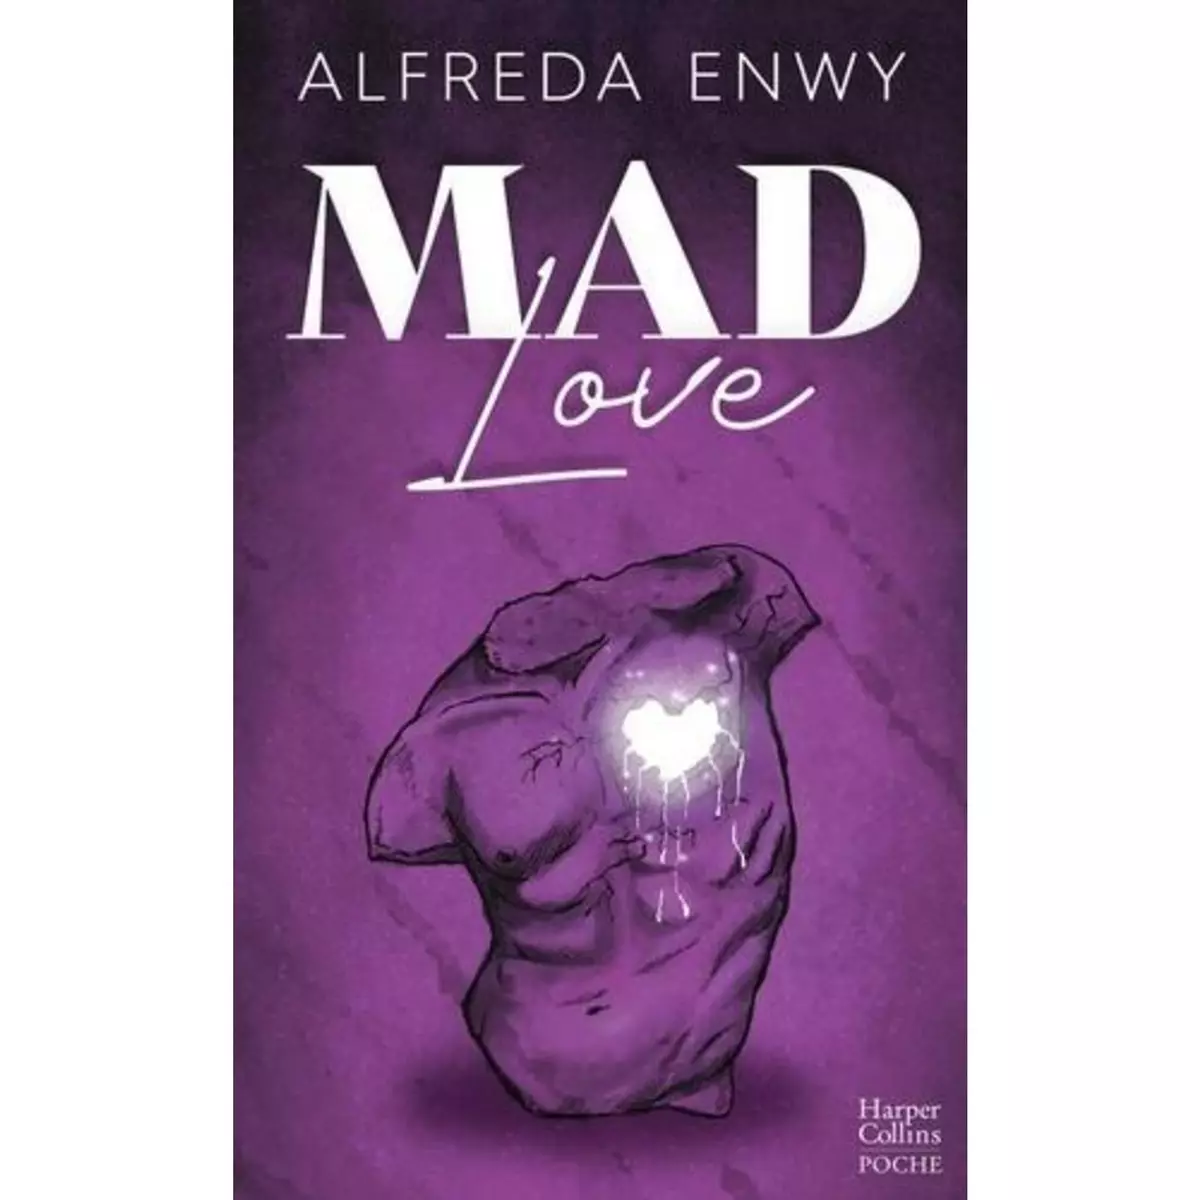  MAD LOVE, Enwy Alfreda